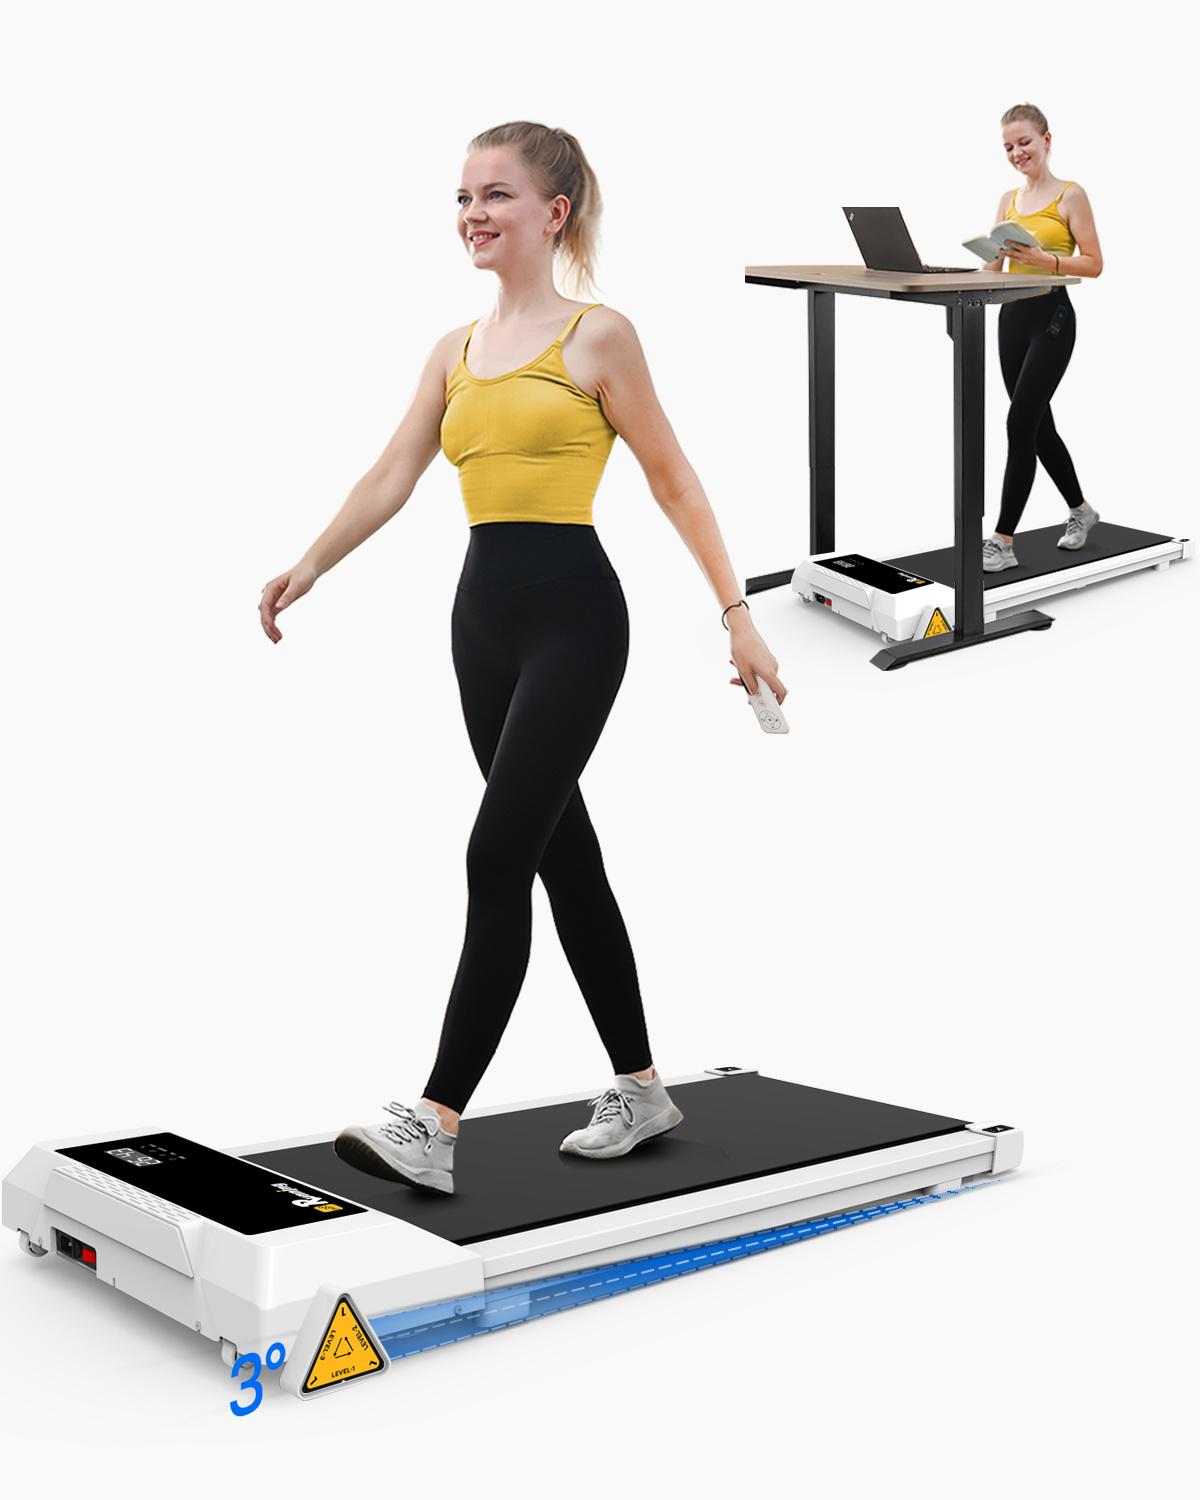 Woman walking on treadmill desk.